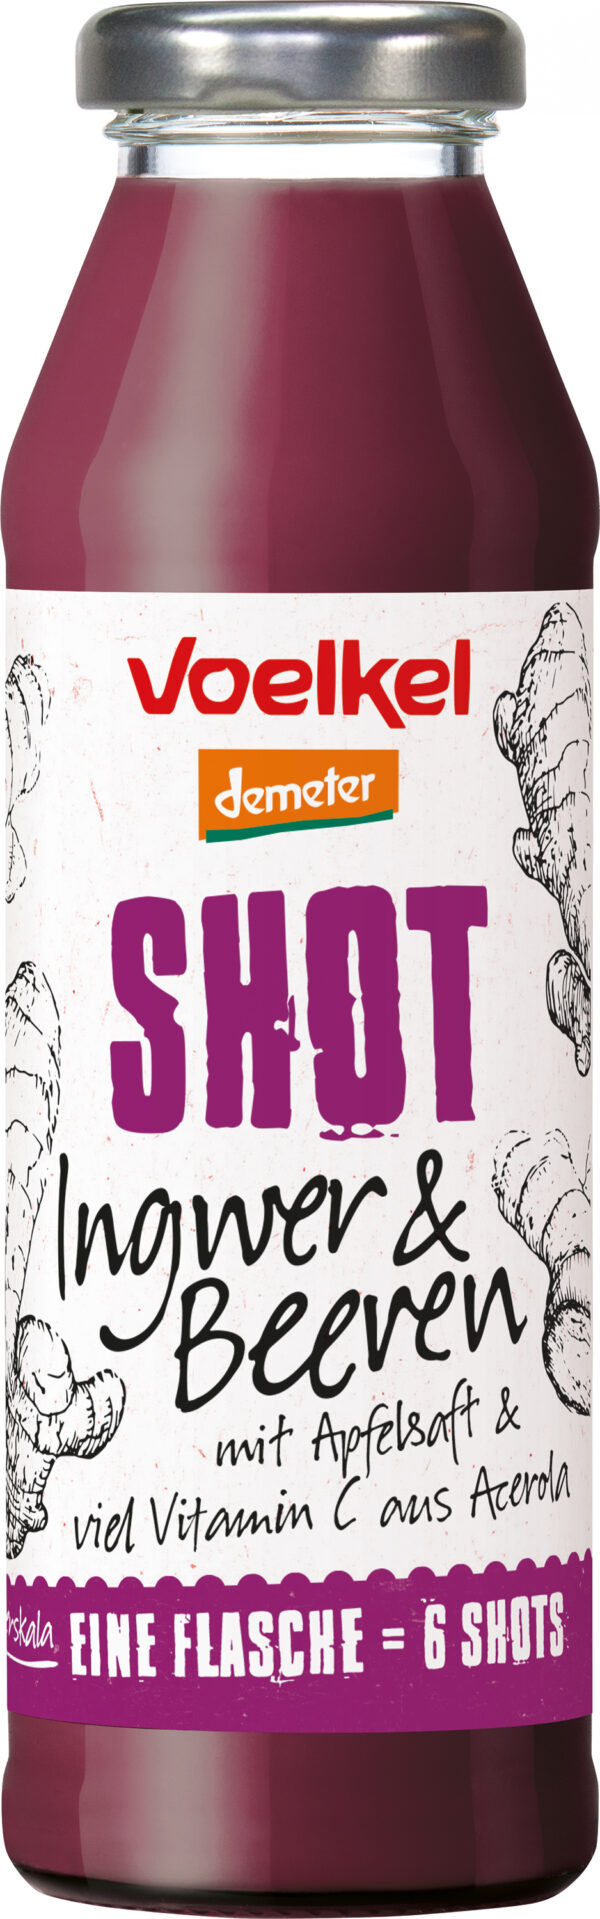 Voelkel Shot Ingwer & Beeren mit Apfelsaft & viel Vitamin C aus Acerola 0,28l